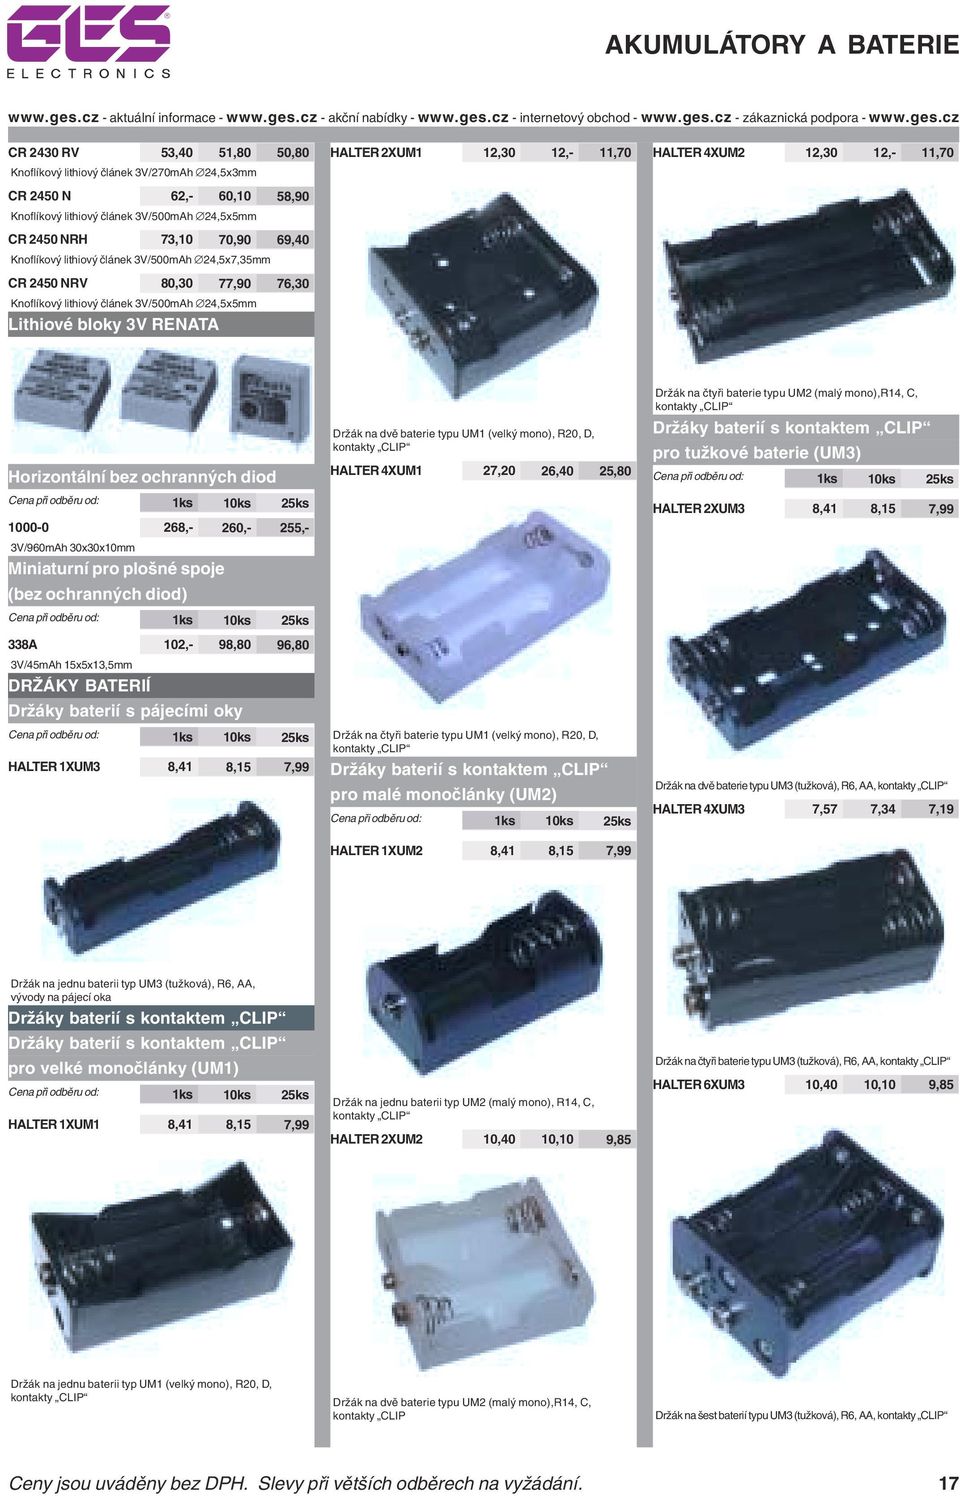 Horizontální bez ochranných diod 1000-0 268,- 260,- 255,- 3V/960mAh 30x30x10mm Miniaturní pro plošné spoje (bez ochranných diod) 338A 102,- 98,80 96,80 3V/45mAh 15x5x13,5mm DRŽÁKY BATERIÍ Držáky